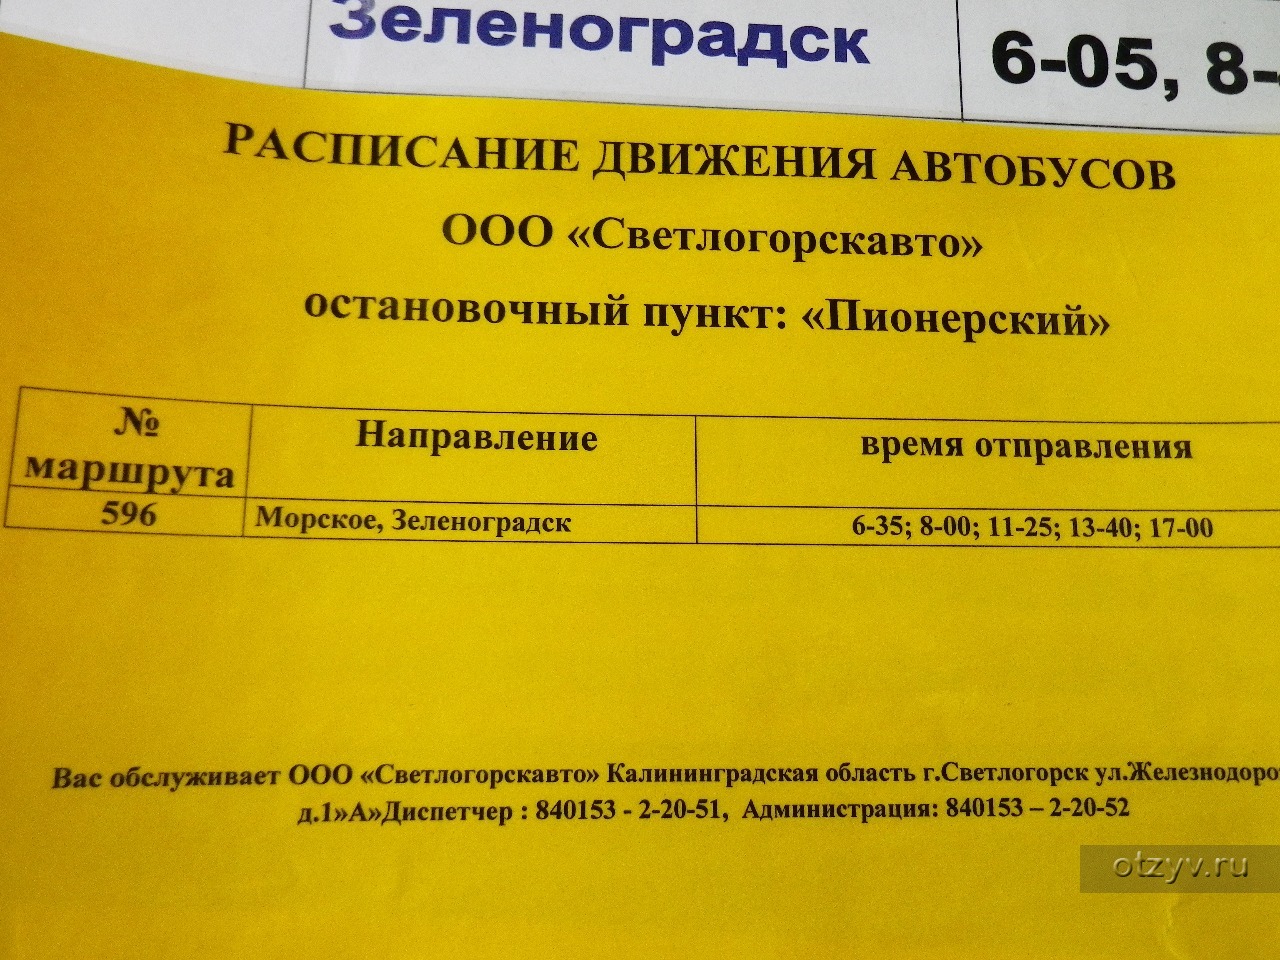 Вокзал зеленоградск расписание автобусов